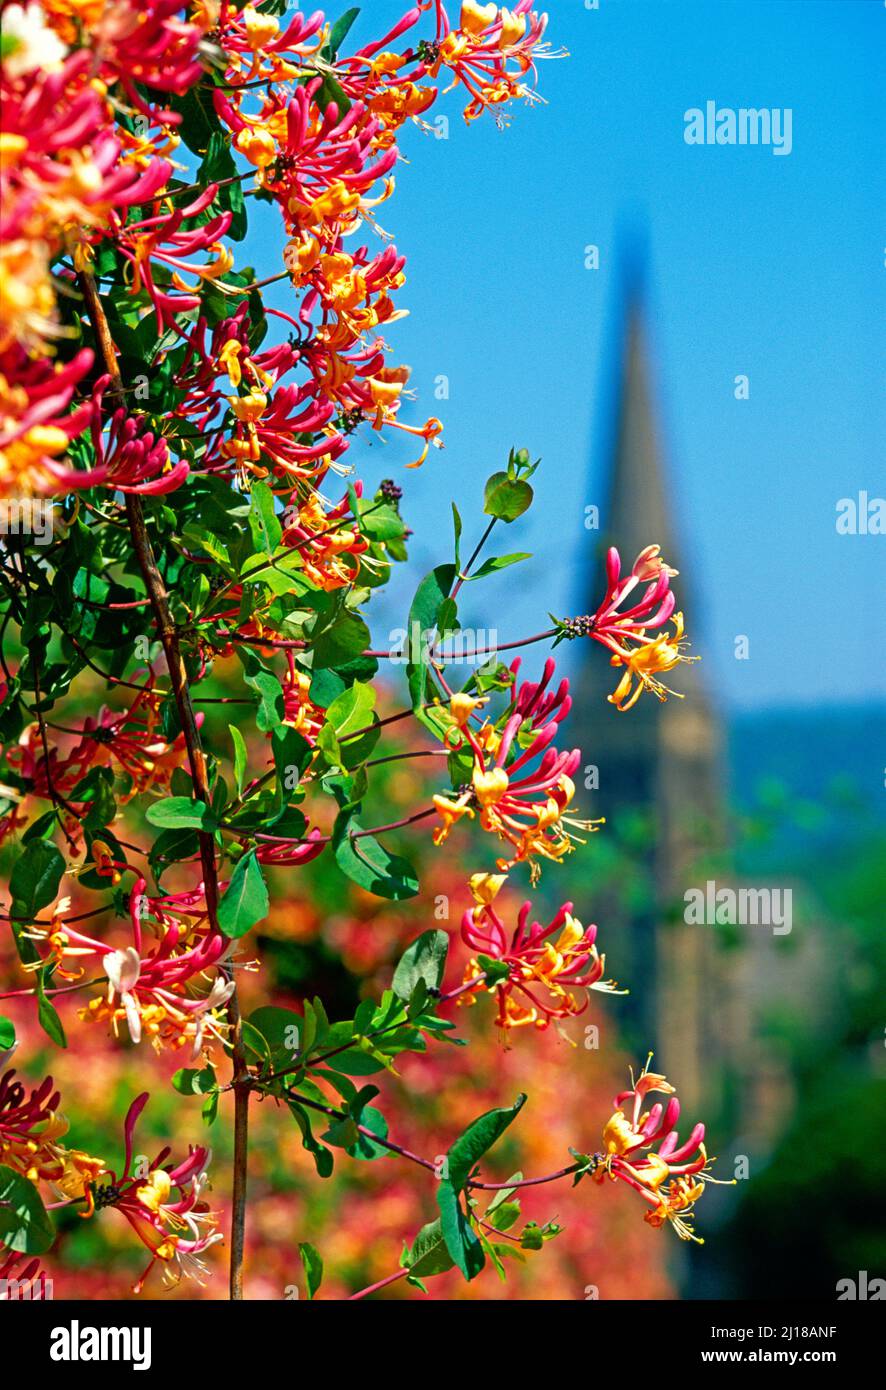 UK, Derbyshire, Edensor Village, honeysuckle, and church spire, Stock Photo